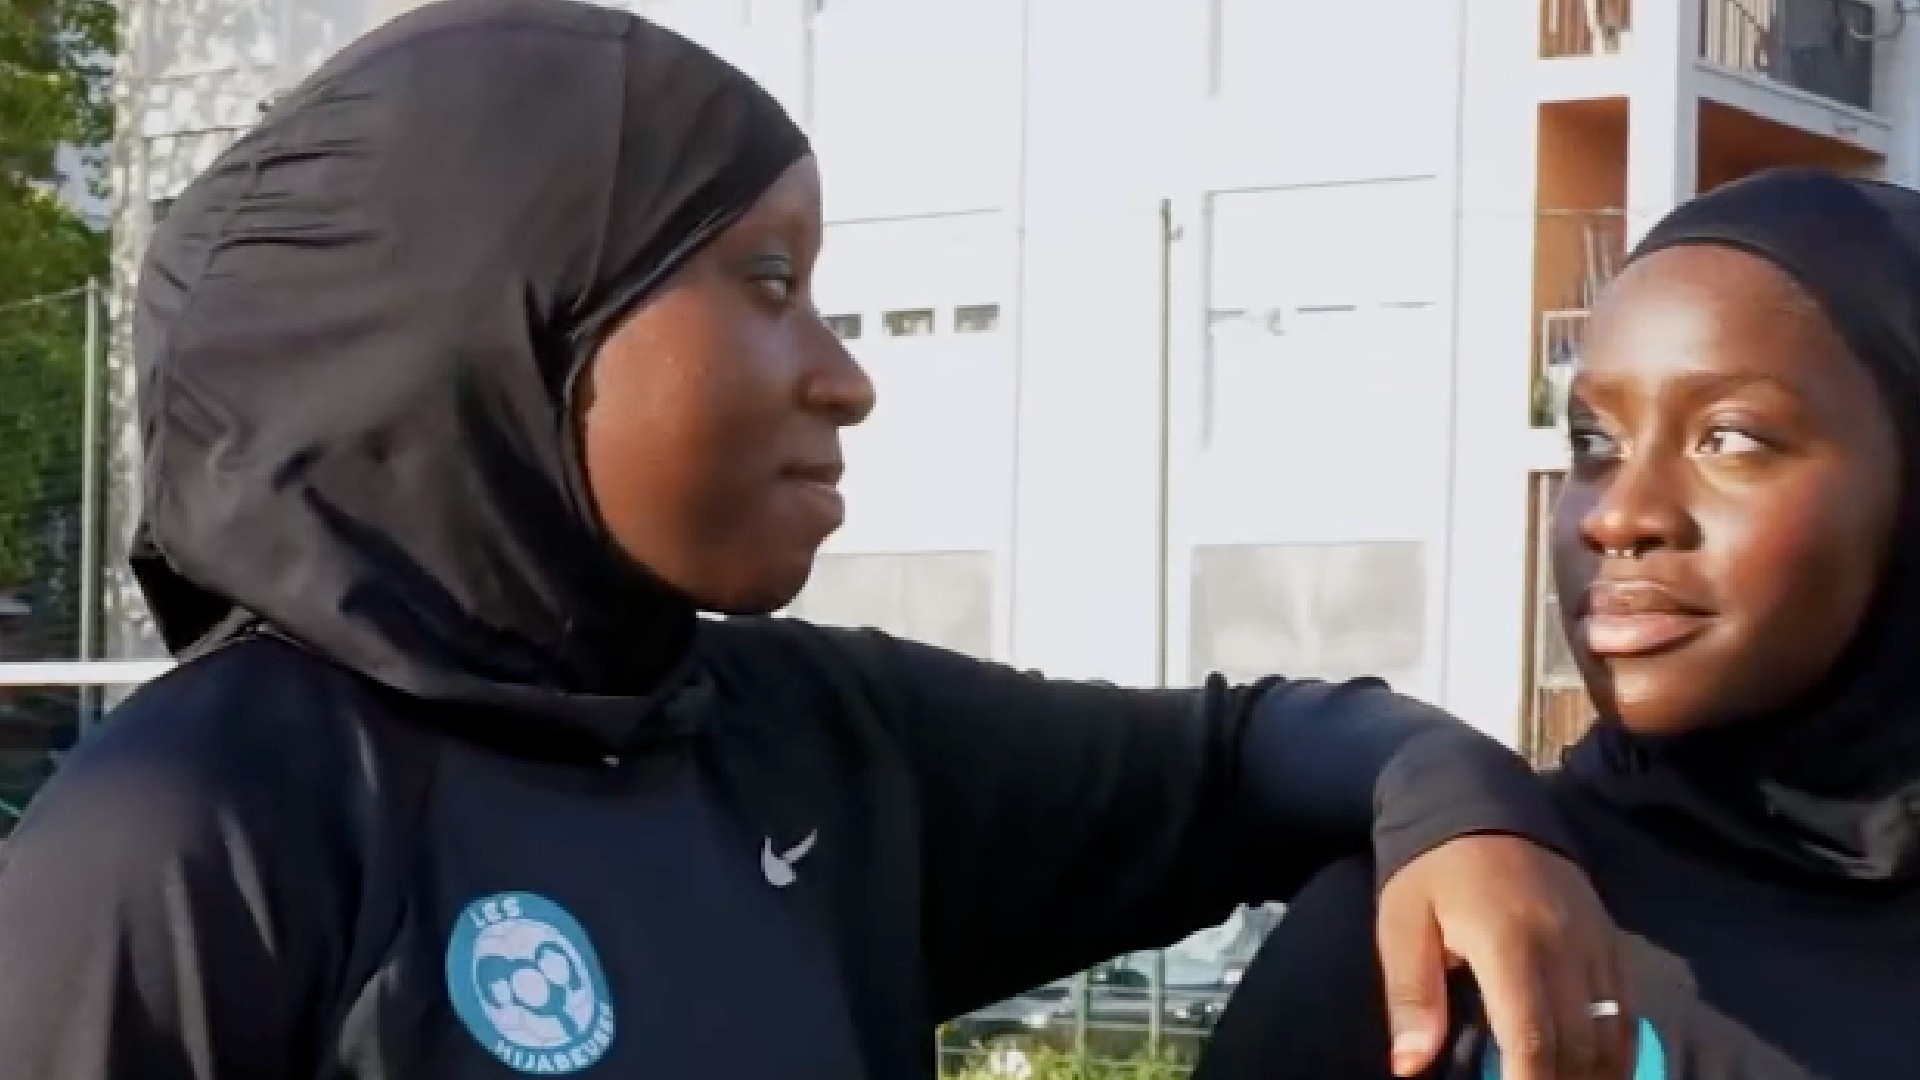 Sephora propose une « rencontre avec l’équipe des Hijabeuses », ce collectif créé en mai 2020 pour défendre le droit des joueuses de football de porter le voile lors des matchs officiels en France (Instagram/@sephorafrance)